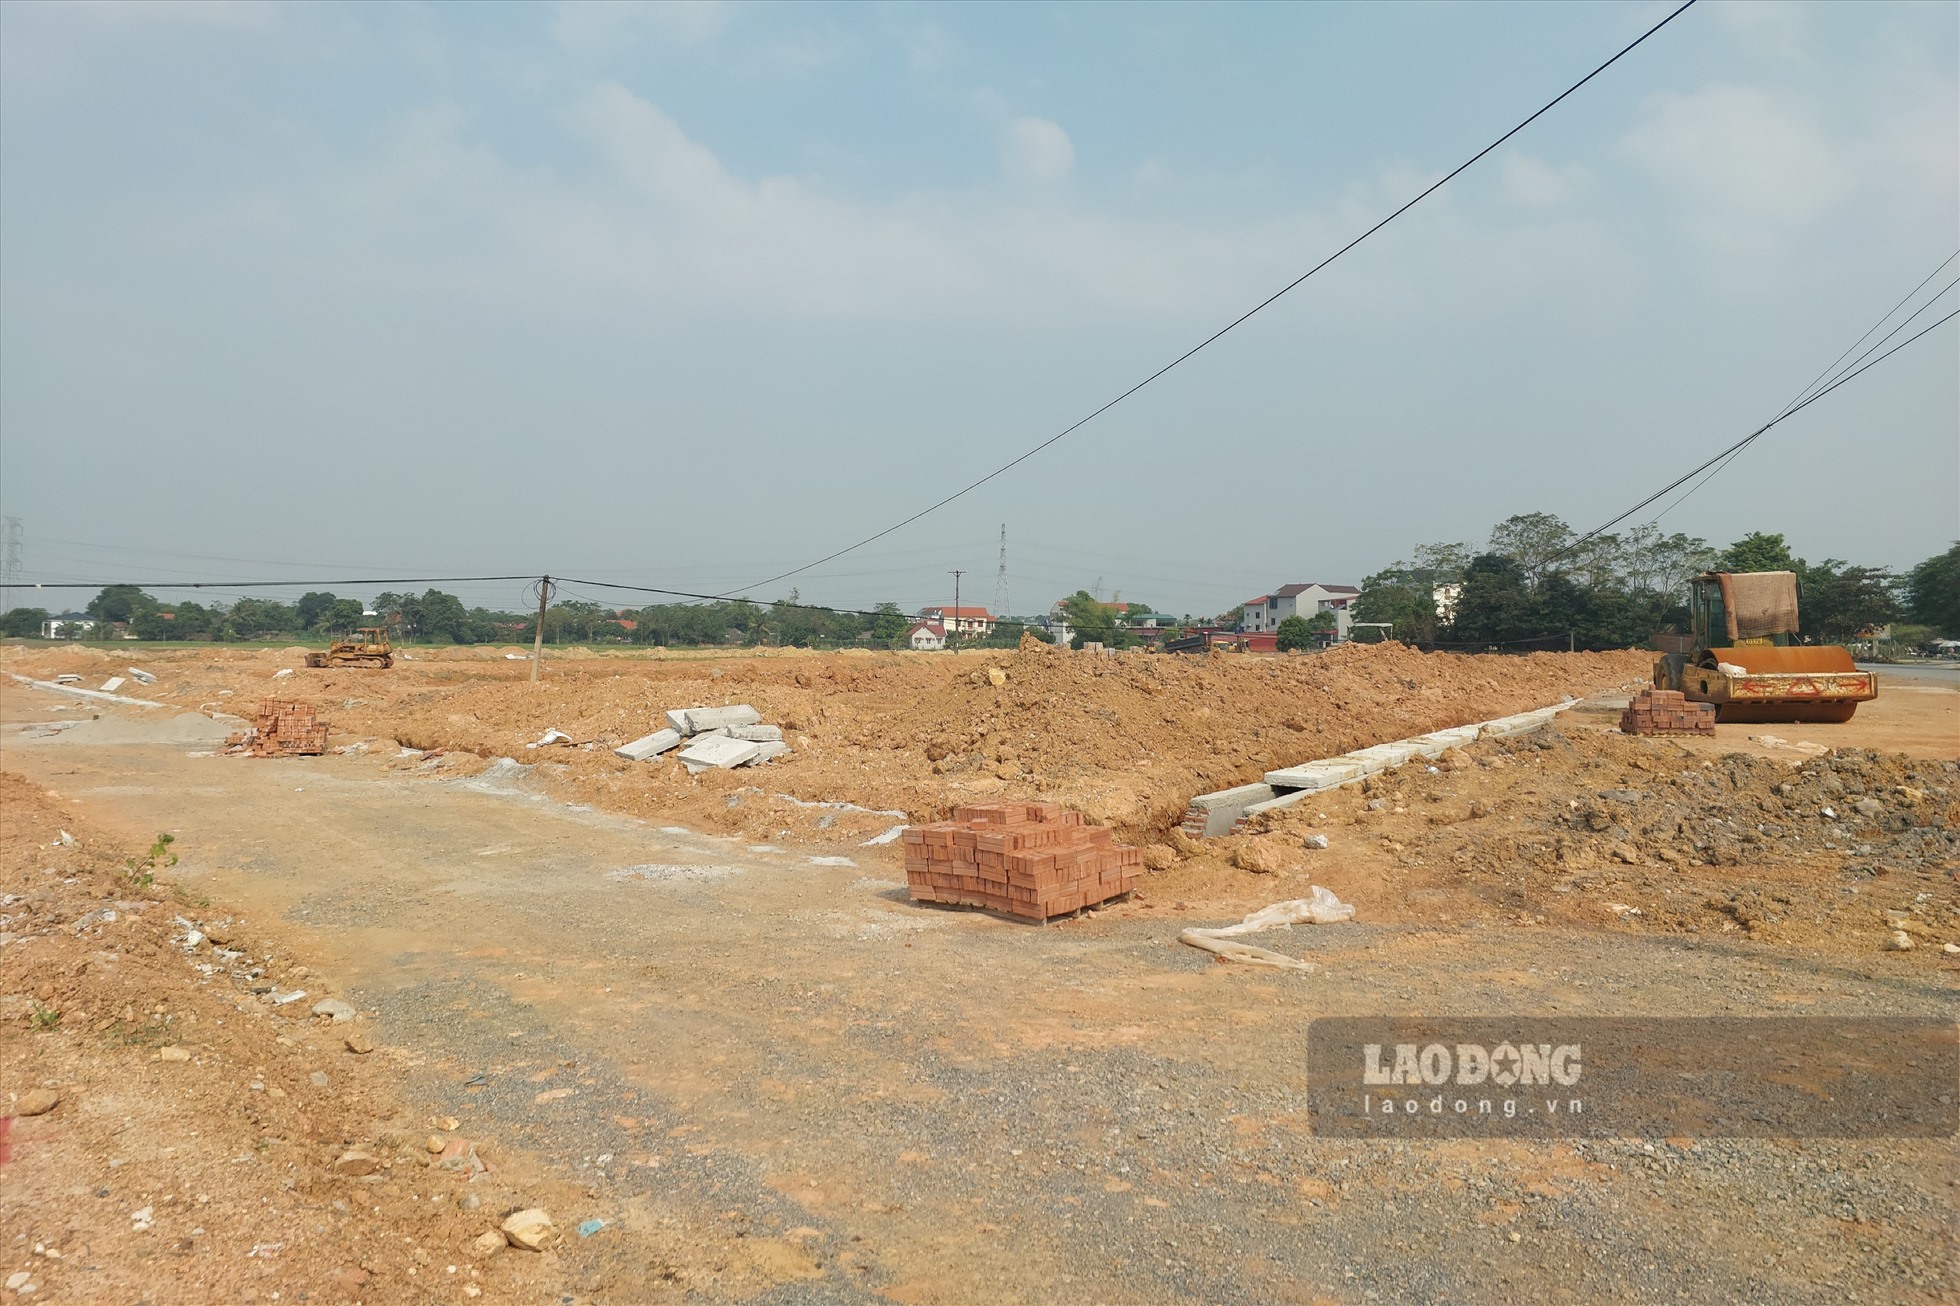 Liên quan đến vụ hủy kết quả đấu giá quyền sử dụng đất 52 ô đất tại huyện Tam Nông, ngày 24.10, PV Báo Lao Động có mặt tại khu đất đấu giá tại xã Lam Sơn, nơi có 48 trên tổng số 52 ô đất đấu giá bị hủy kết quả vừa qua.